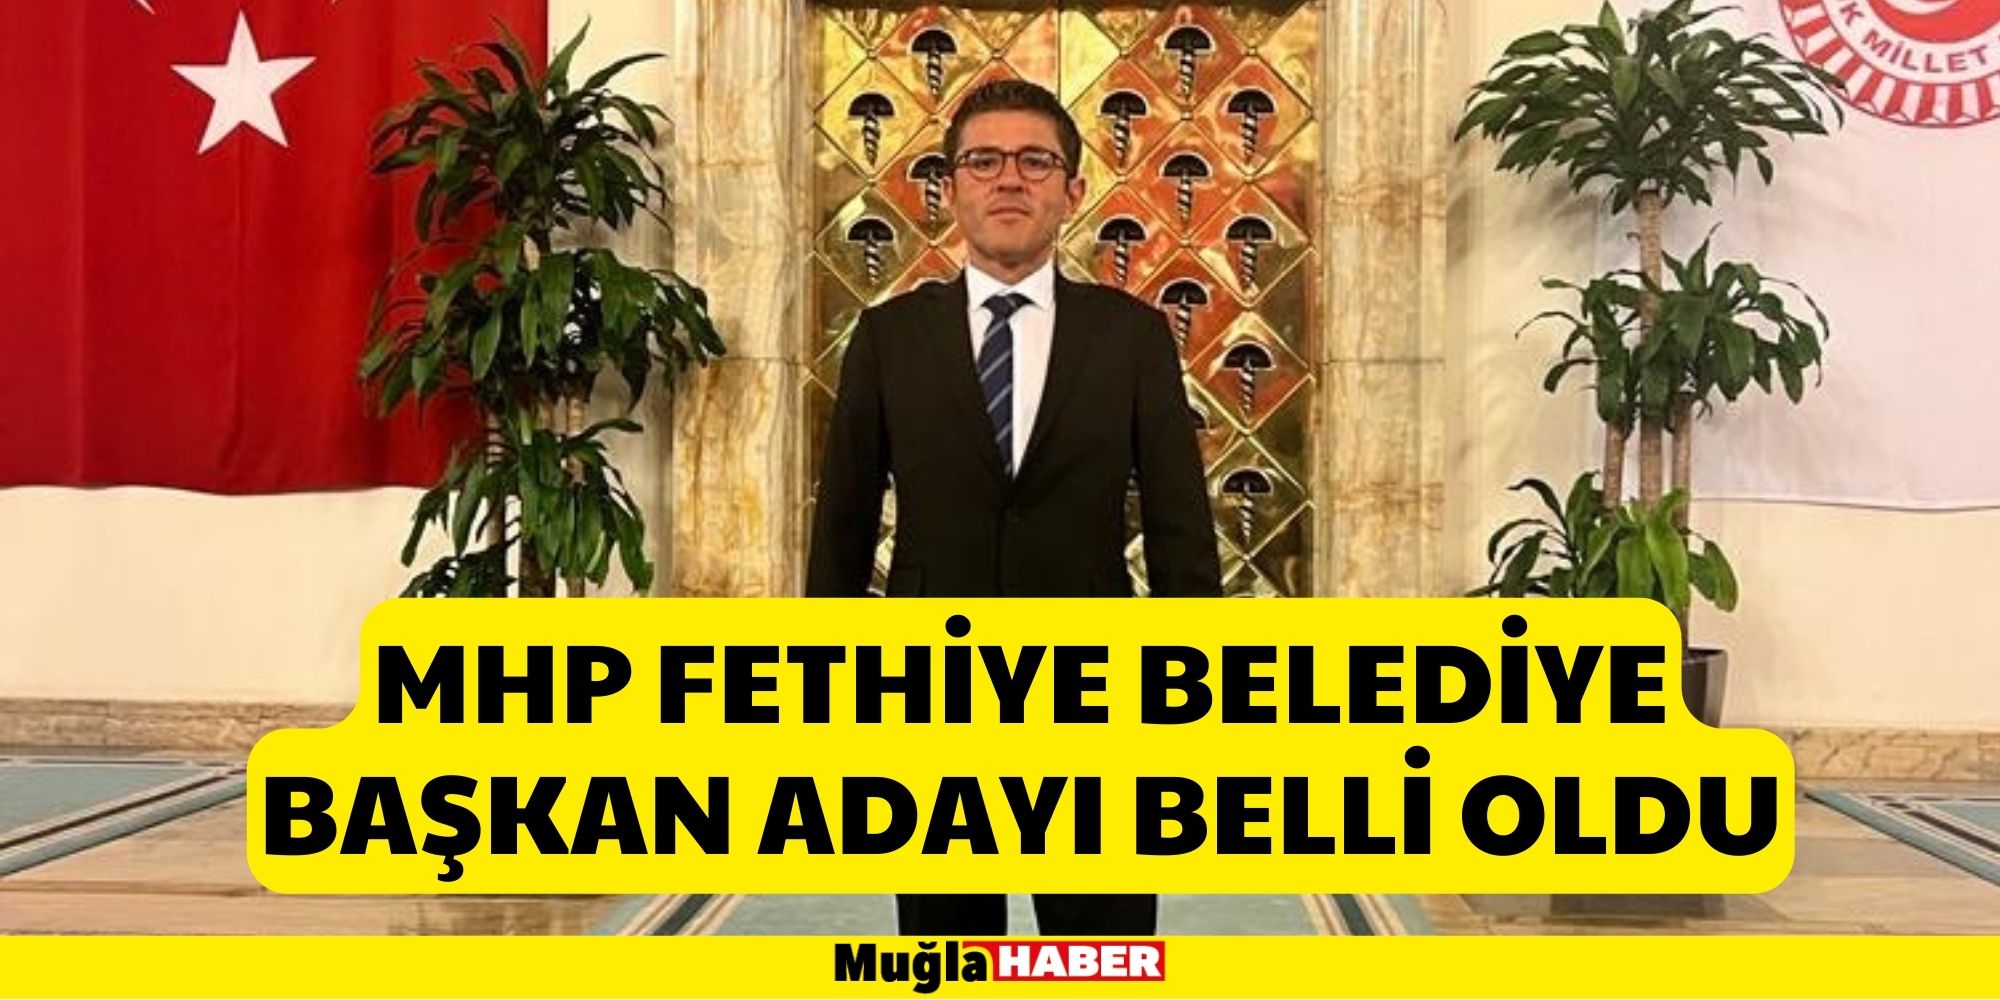 MHP Fethiye Belediye Başkan Adayı Belli Oldu